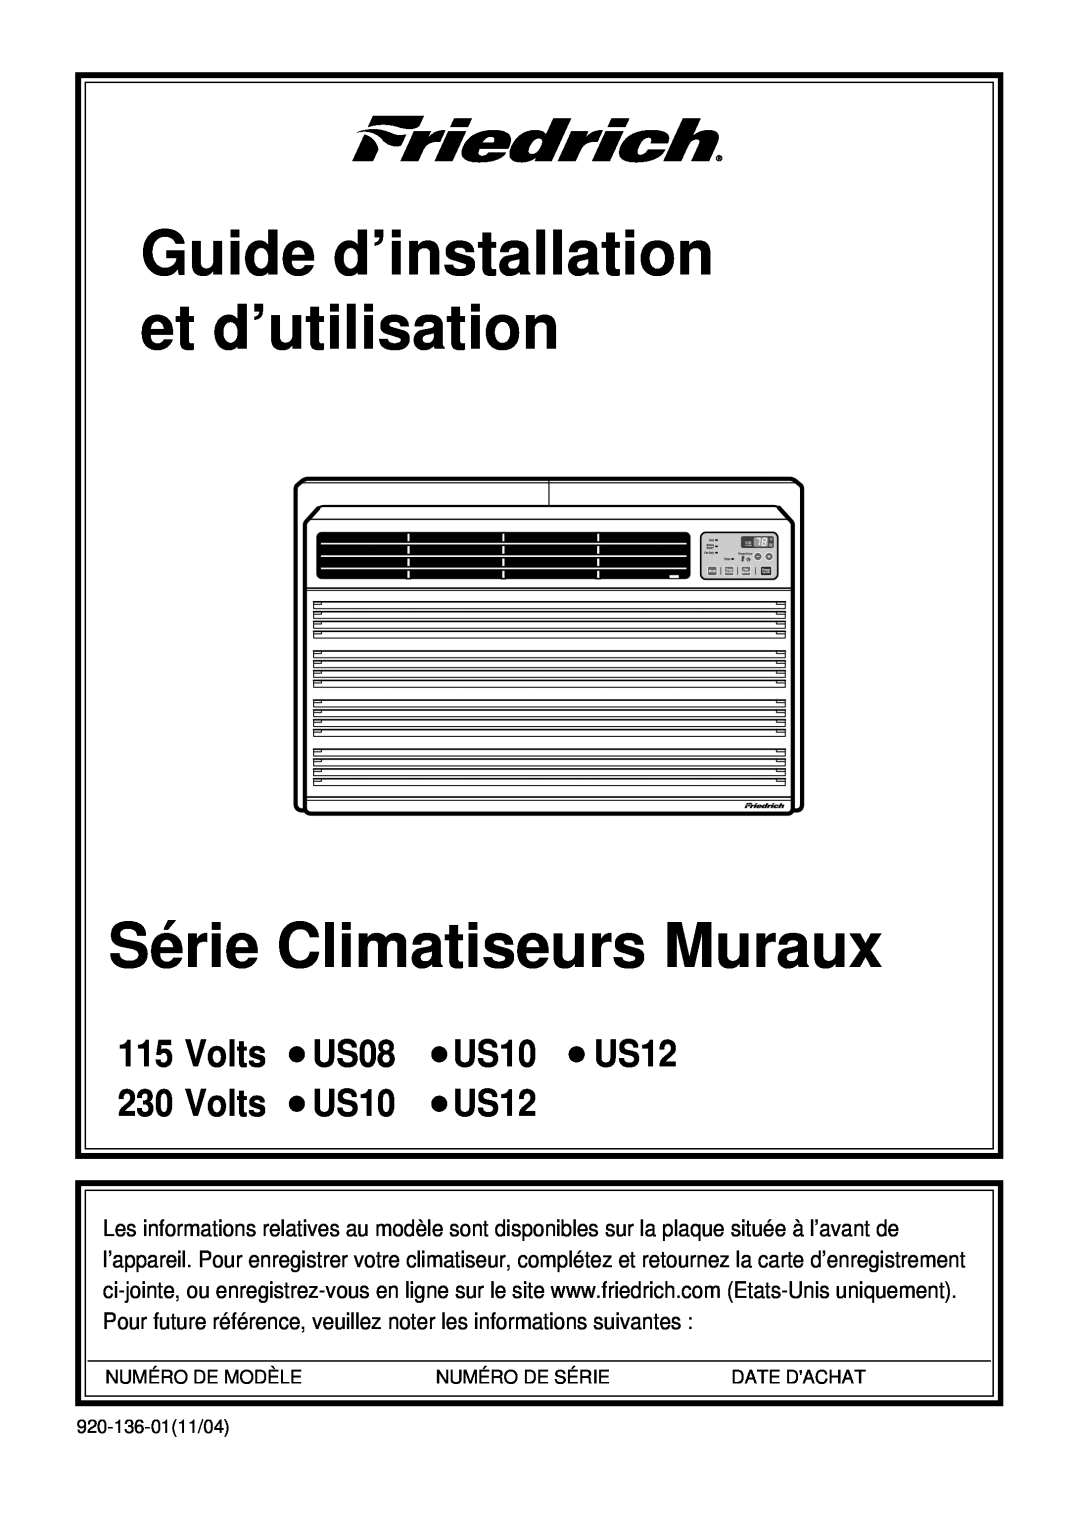 Friedrich US08, US10, US12 manual Guide d’installation et d’utilisation, Série Climatiseurs Muraux, Volts 